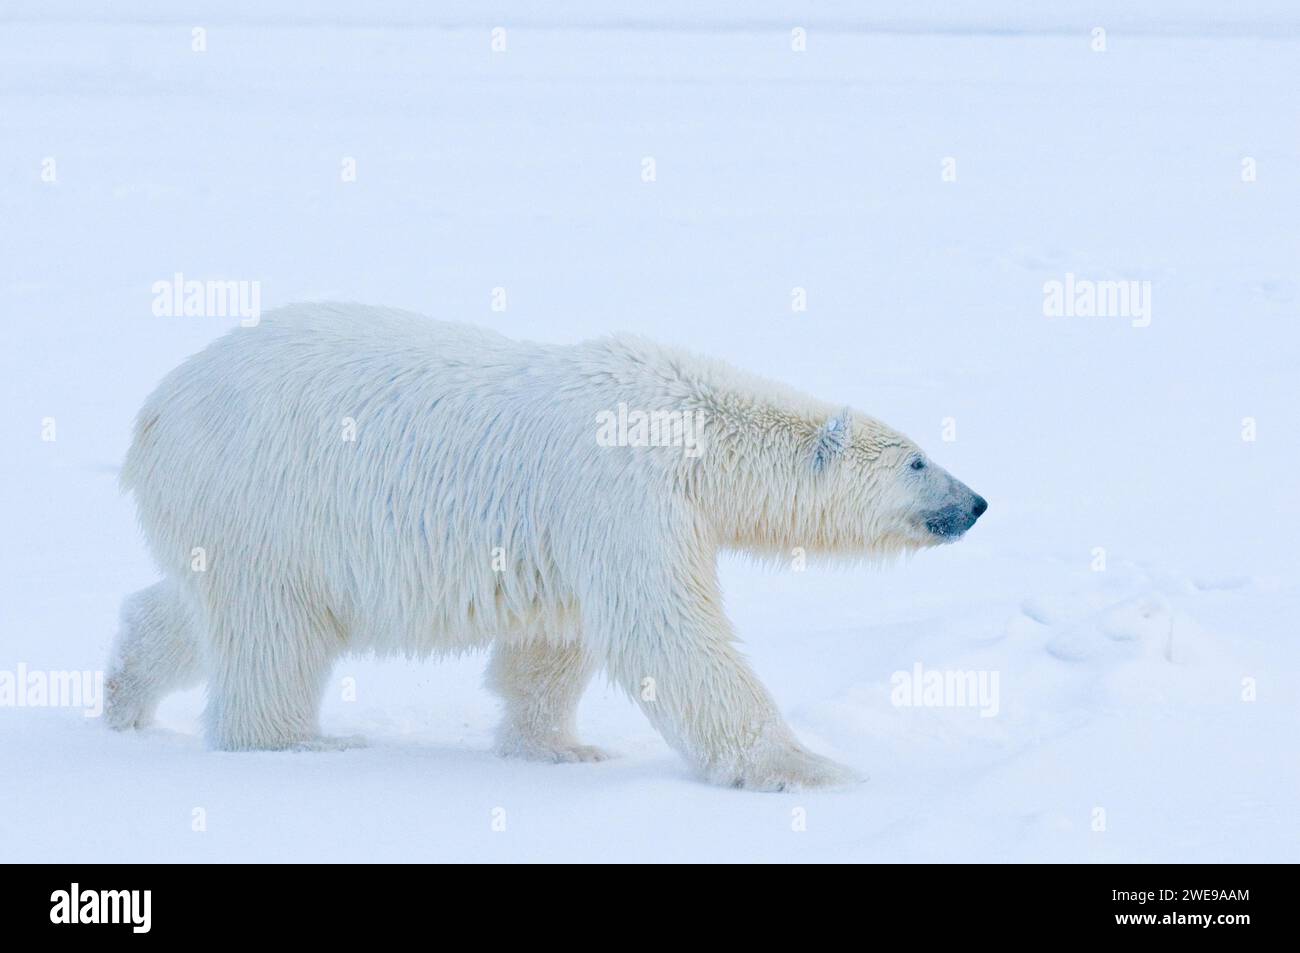 Ours polaire Ursus maritimus gros ourson voyageant à travers la banquise nouvellement formée à l'automne geler jusqu'à 1002 ANWR Kaktovik Barter Island Alaska Banque D'Images